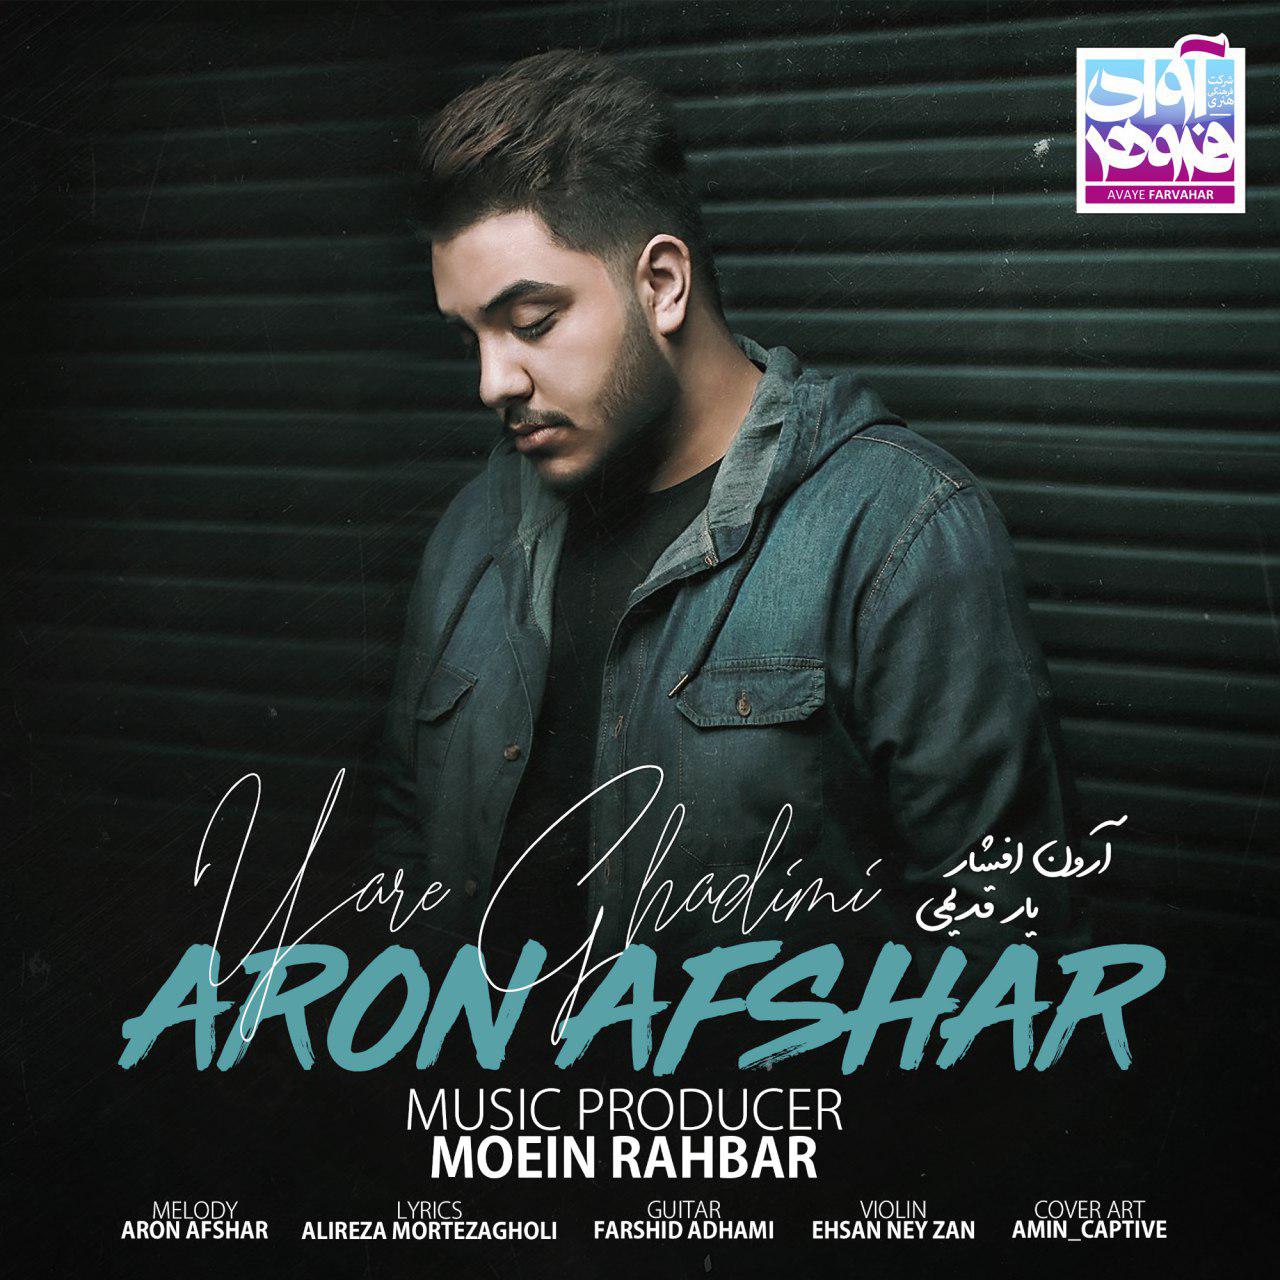  دانلود آهنگ جدید آرون افشار - یار قدیمی | Download New Music By Aron Afshar - Yare Ghadimi